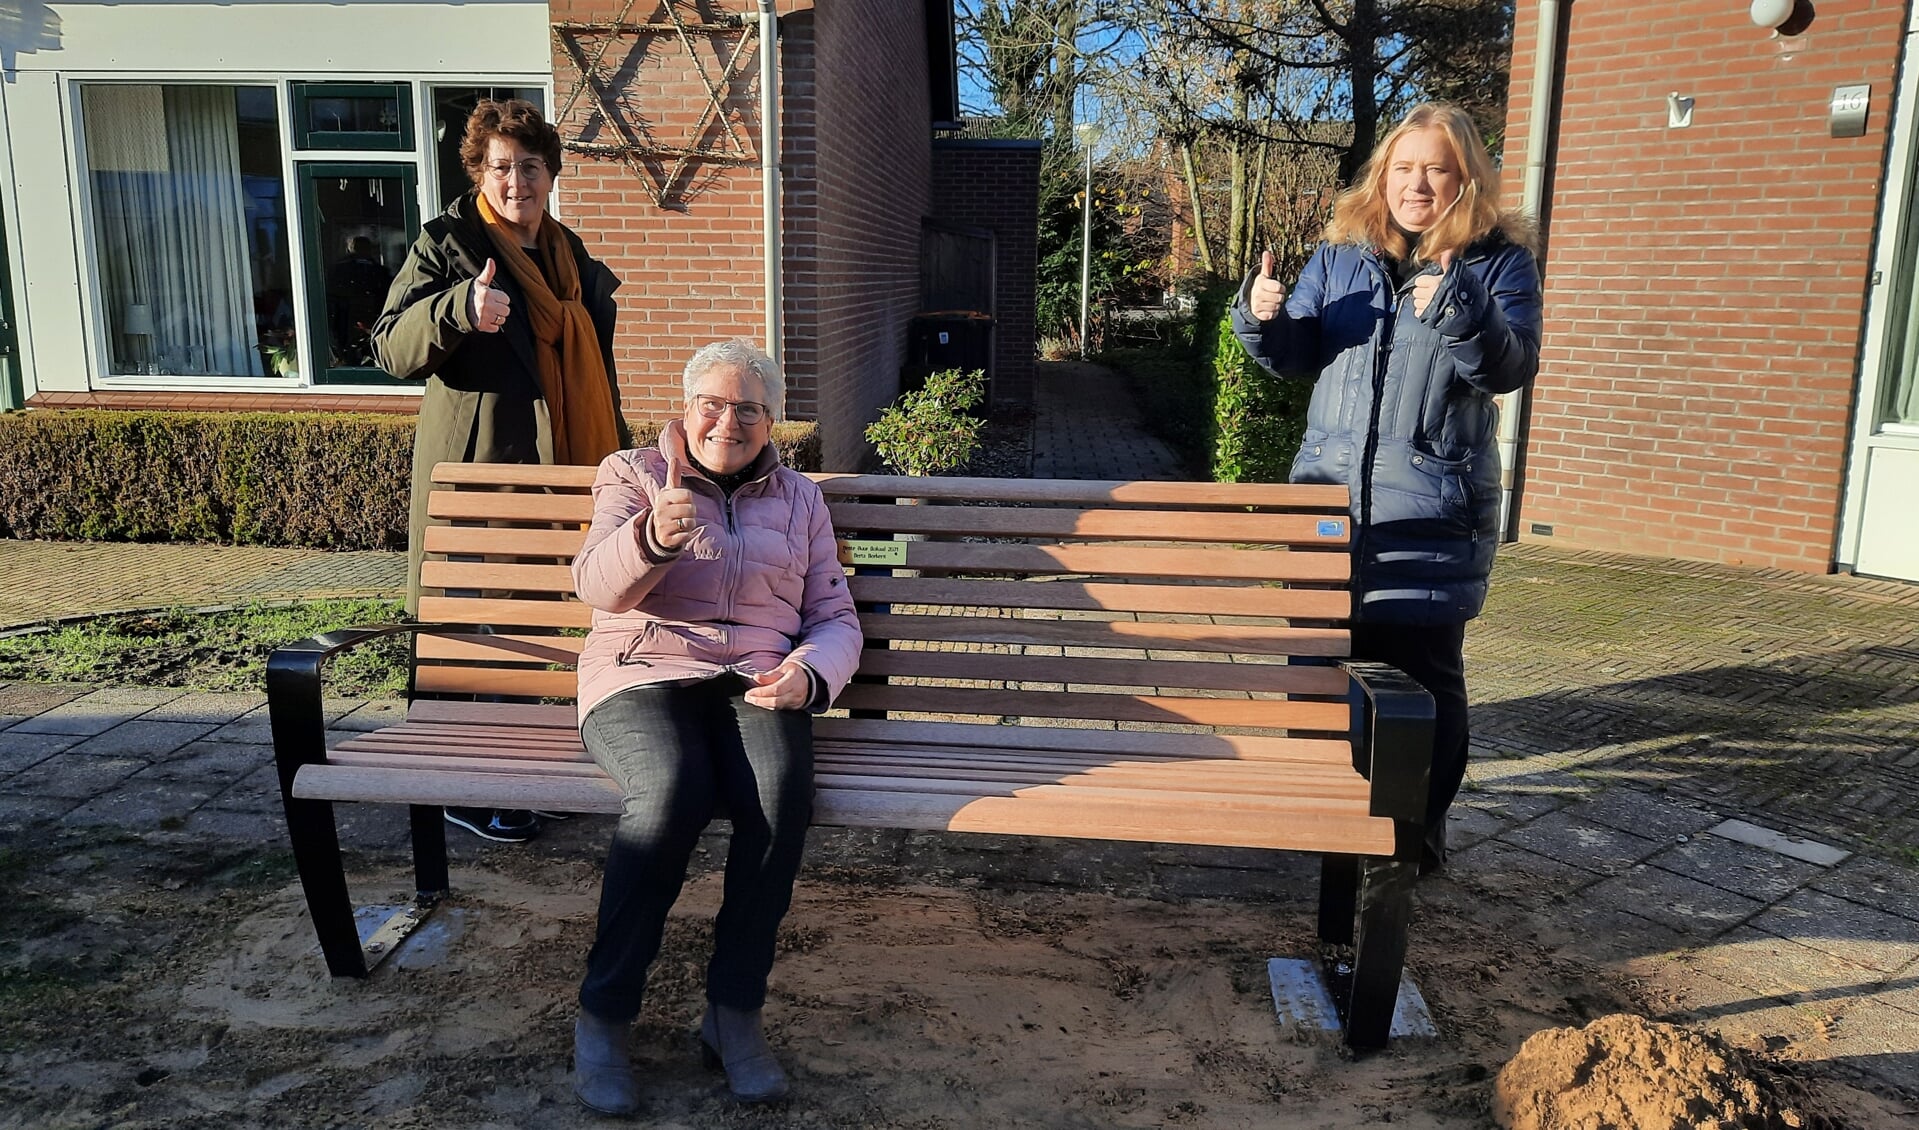 De winnaar van 2021 in Wierden mevrouw Borkent, helemaal tevreden op  haar gewonnen buurtbankje waar de hele buurt zich vast vaak gaat verzamelen.